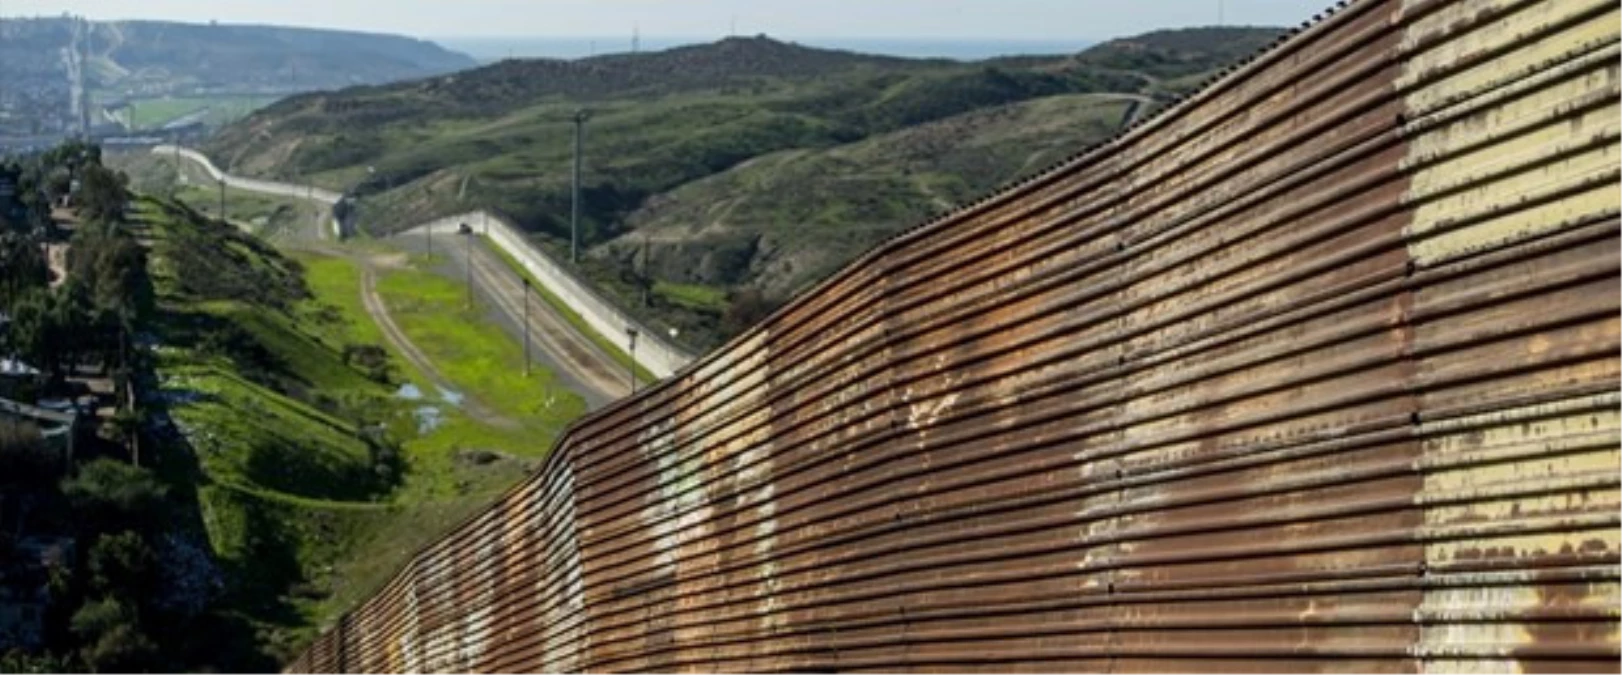 Meksika Sınırına Duvar 2 Yıl İçinde Bitebilir"